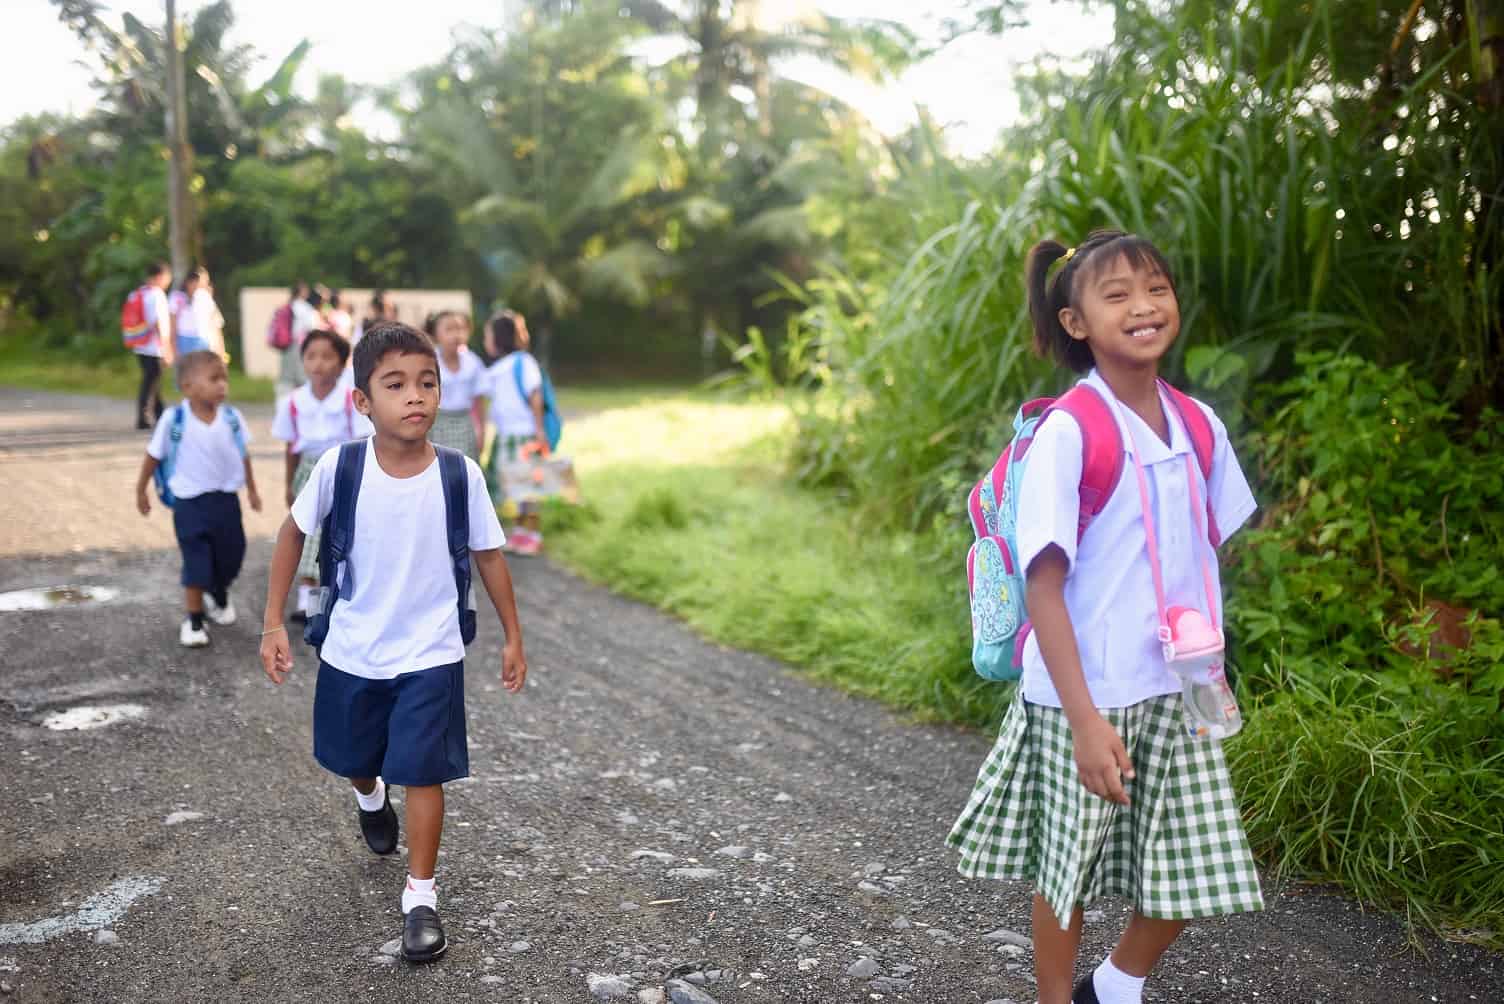 soziale-projekte-strassenkinder-philippinen